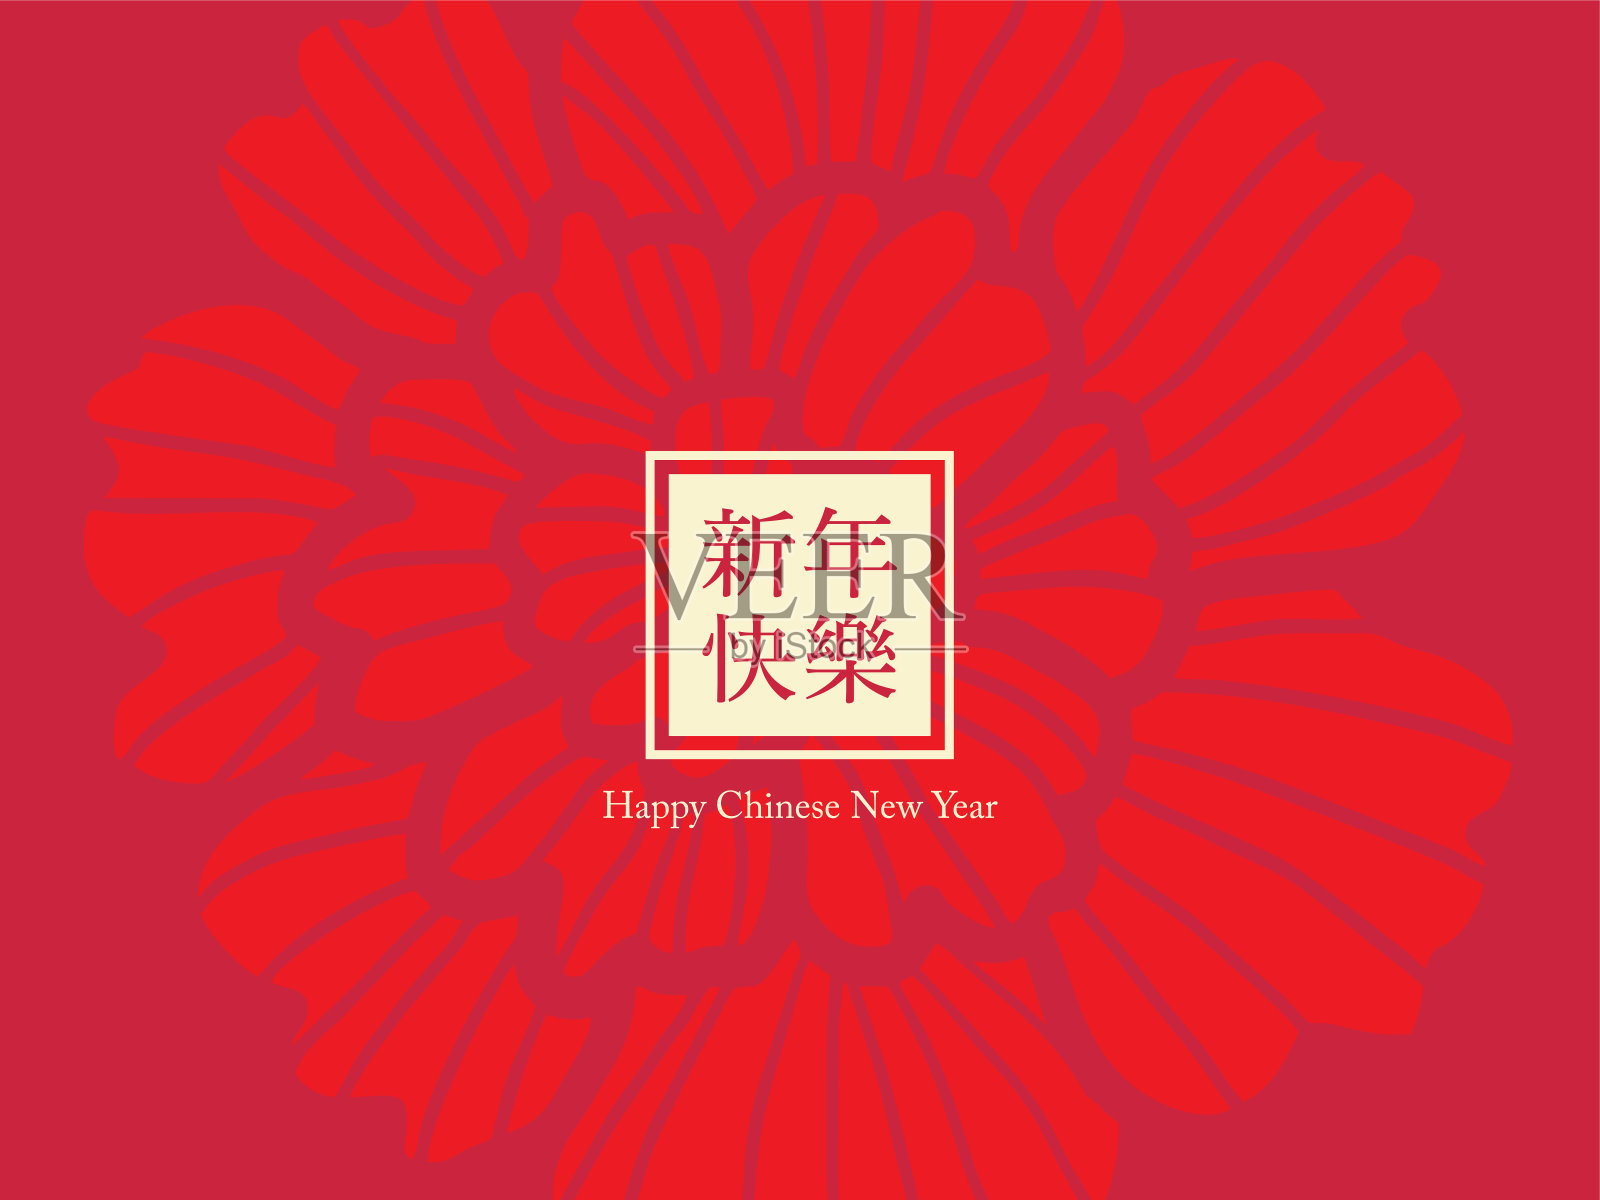 牡丹纹章模板矢量/插图/中文文字翻译:春节快乐矢量设计模板素材